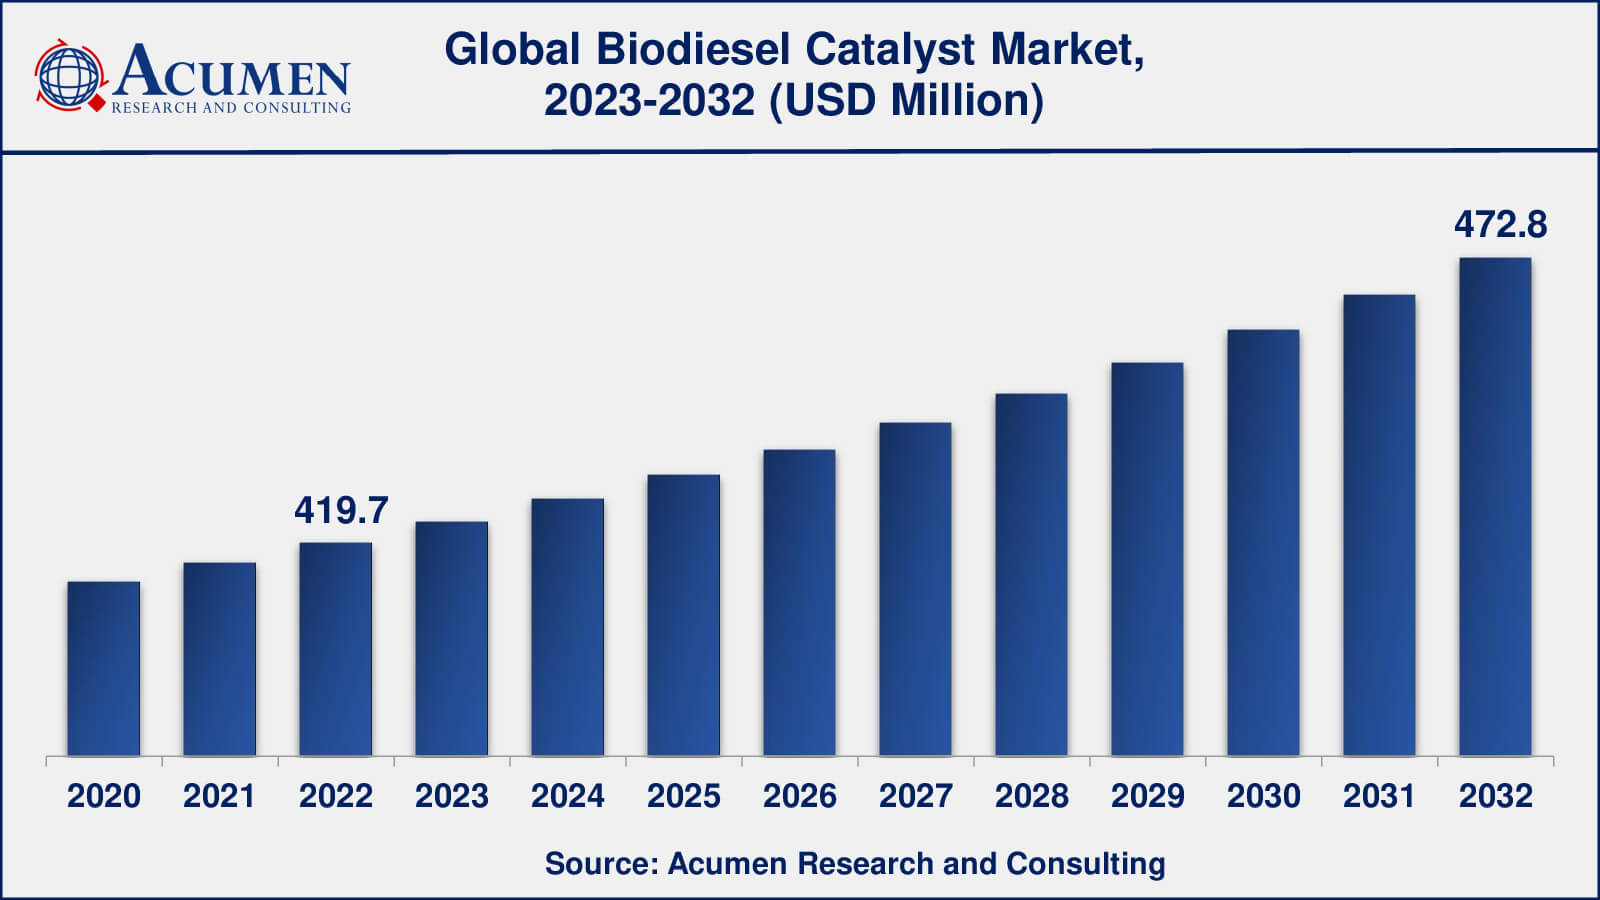 Biodiesel Catalyst Market Analysis Period